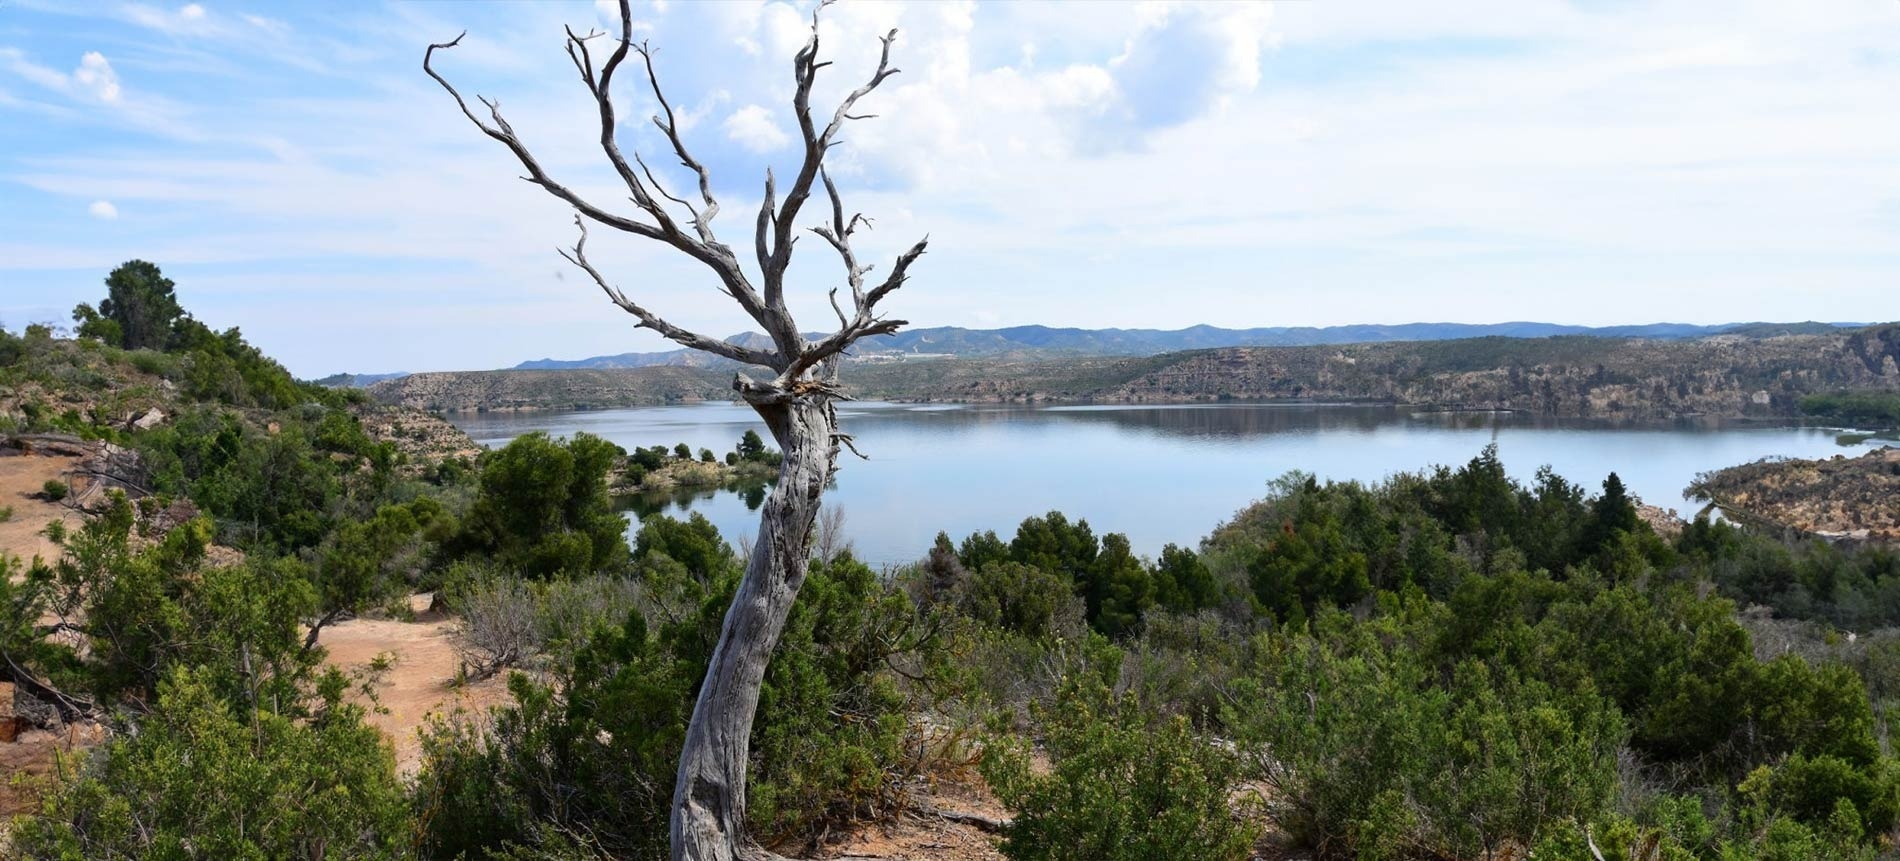 un arbre mort se tient au bord d' un lac entouré d' arbres et de montagnes